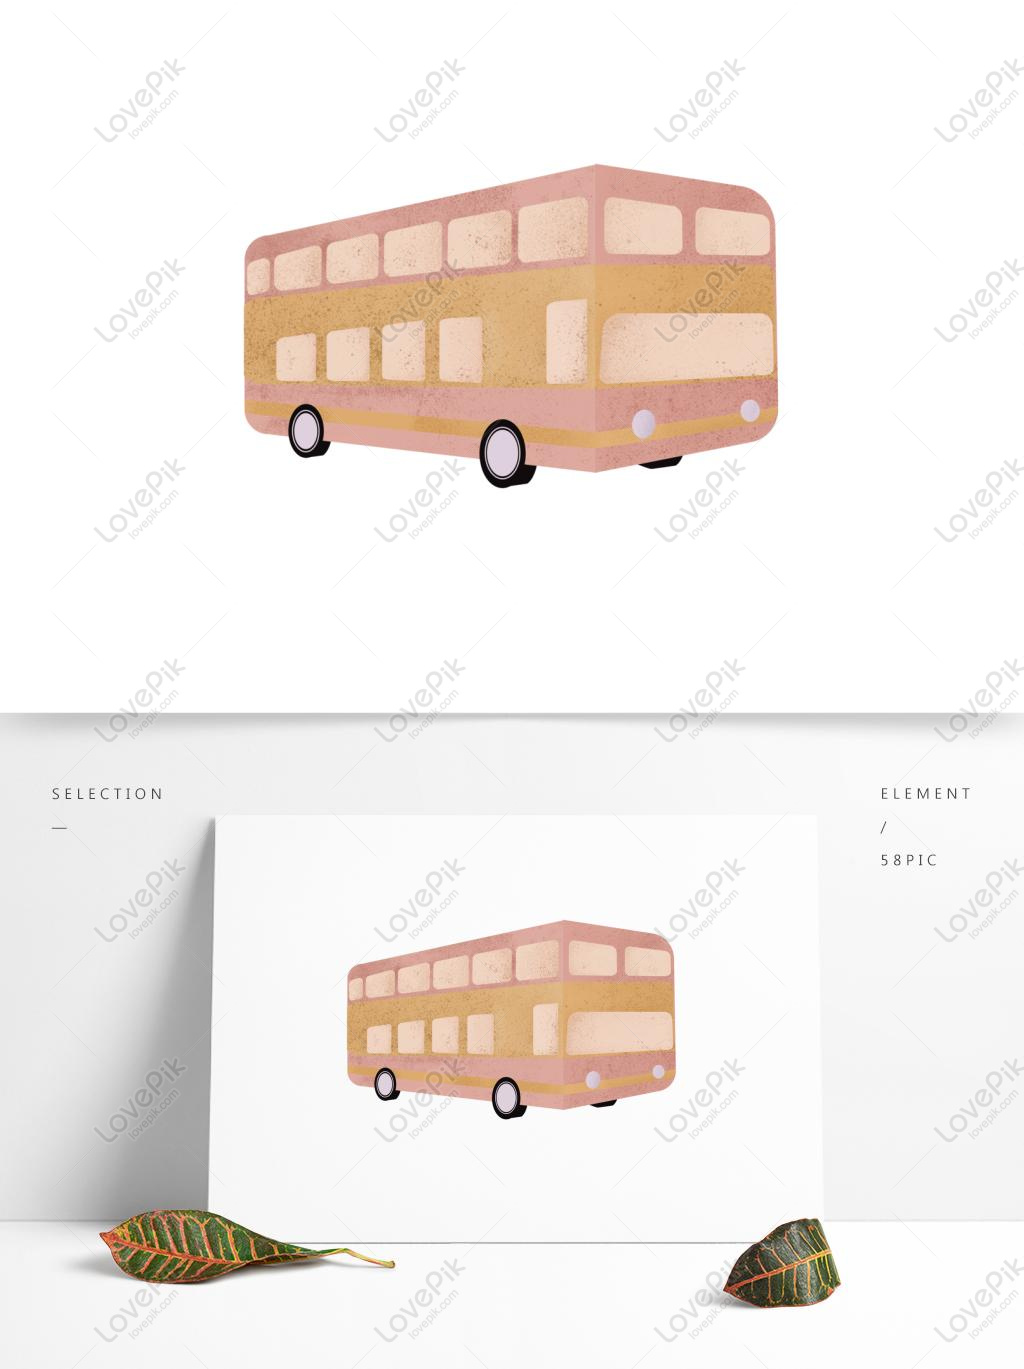 Hình vẽ xe buýt: Trong những thước phim về hình vẽ xe buýt, những kỹ năng, tài năng và sự sáng tạo của những họa sĩ được thể hiện một cách tuyệt vời. Xem hình ảnh để khám phá thế giới đầy màu sắc và cảm hứng này.